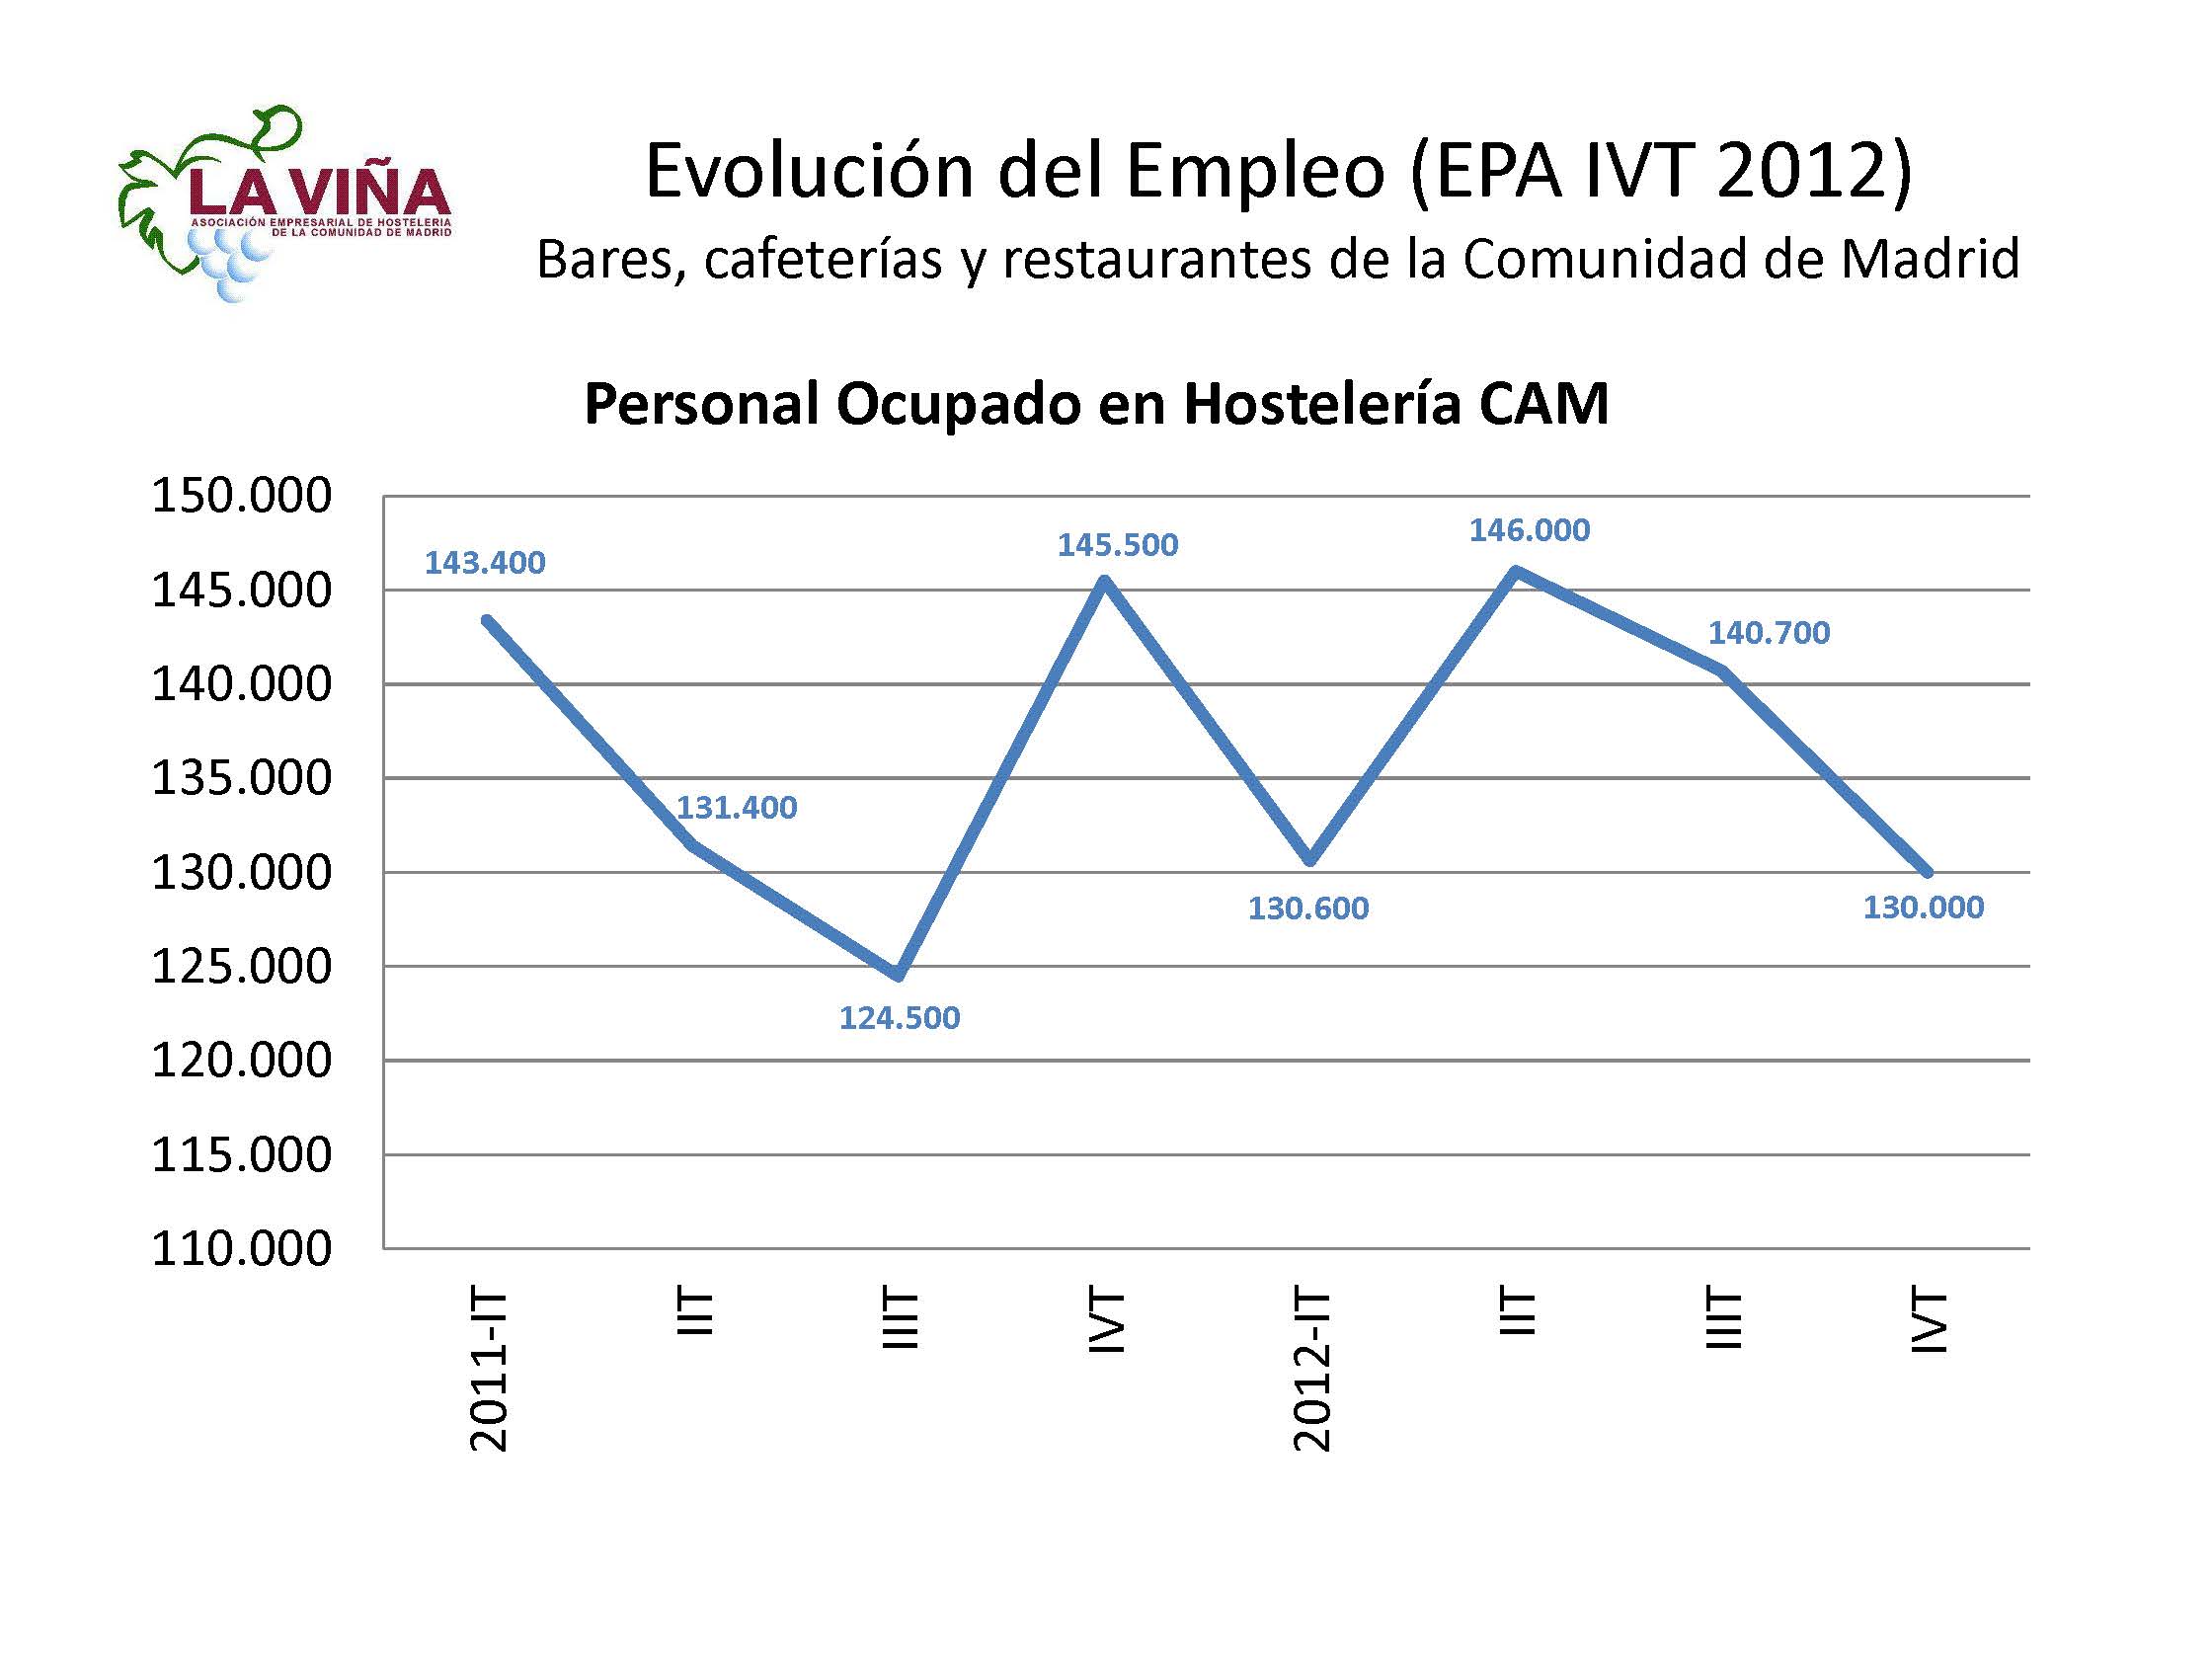 La restauración madrileña pierde el 10,7% del empleo en el último trimestre de 2012 - La Viña